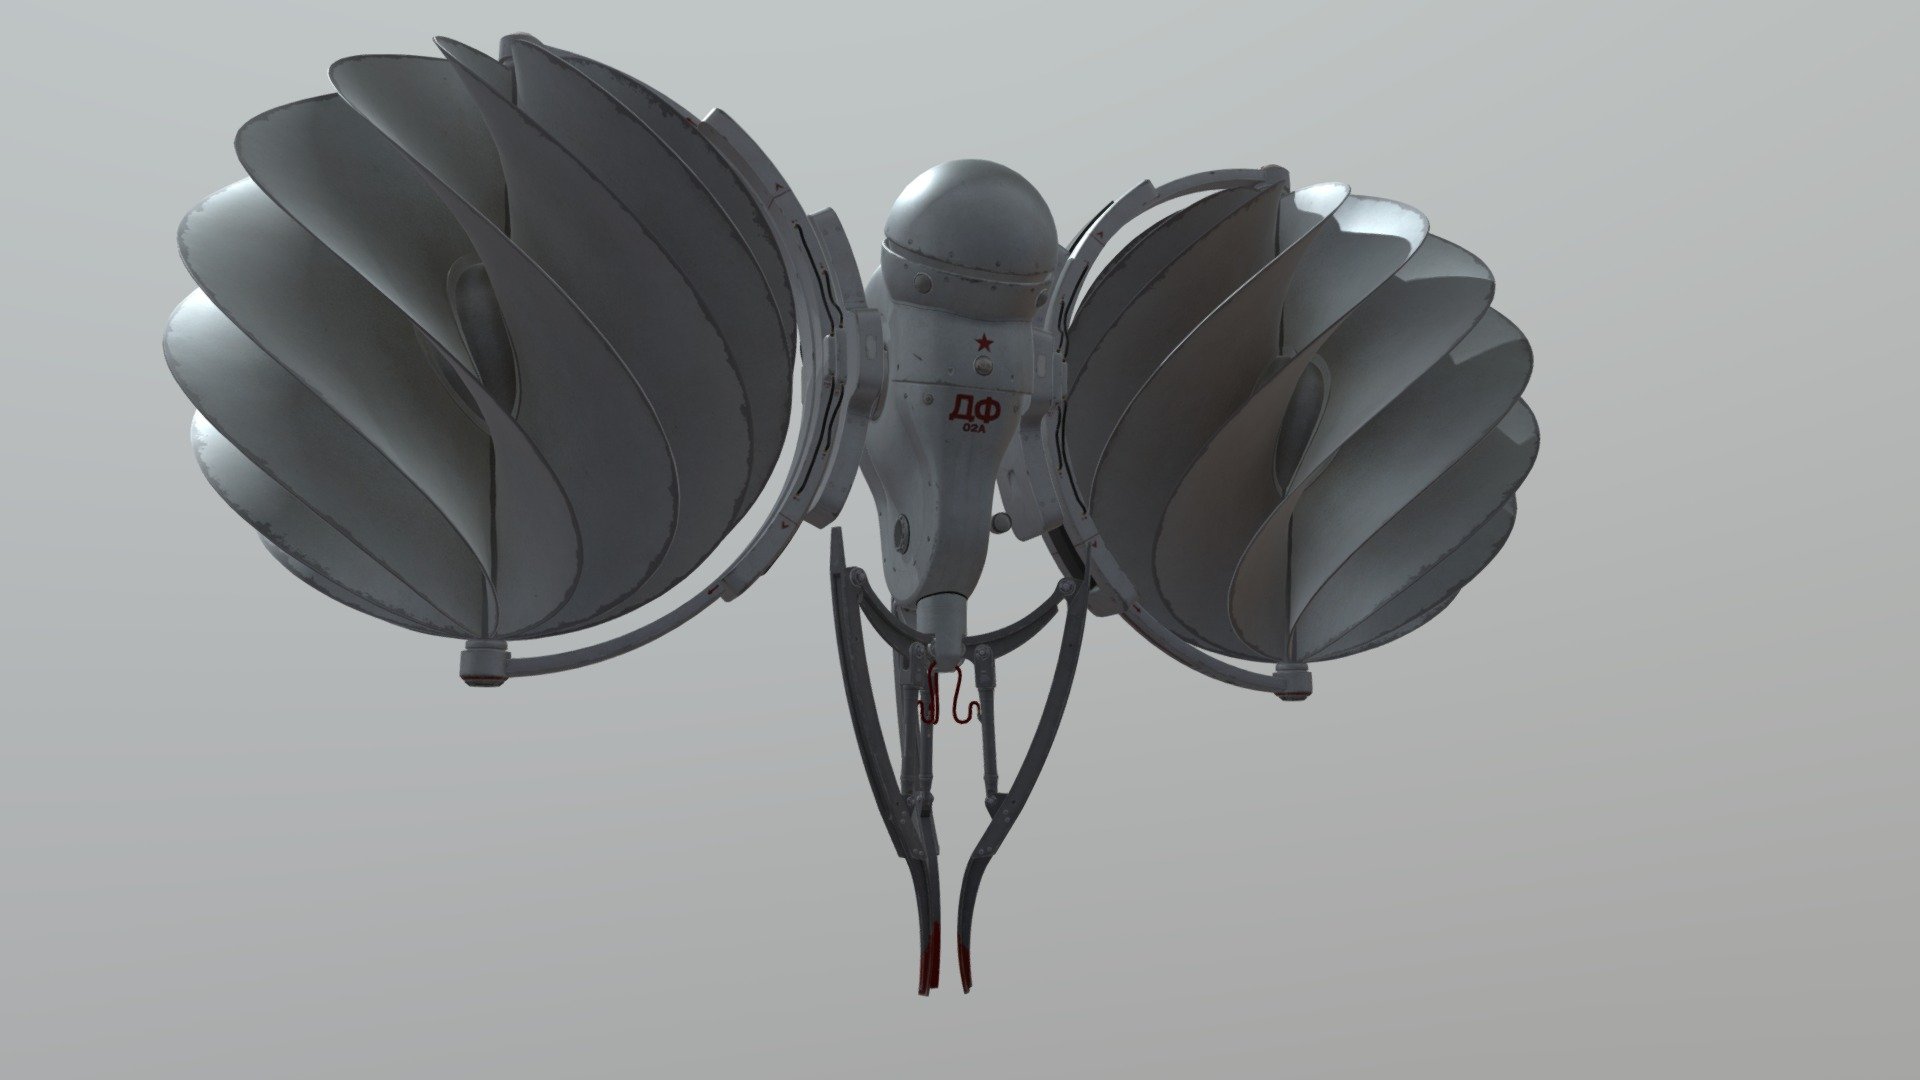 Дрофа (ДФ-02А), из игры Atomic Heart.
Летающий робот предназначенный для перевозки тяжёлых грузов. Так же может вести разведку с помощью &ldquo;глаза бинокля